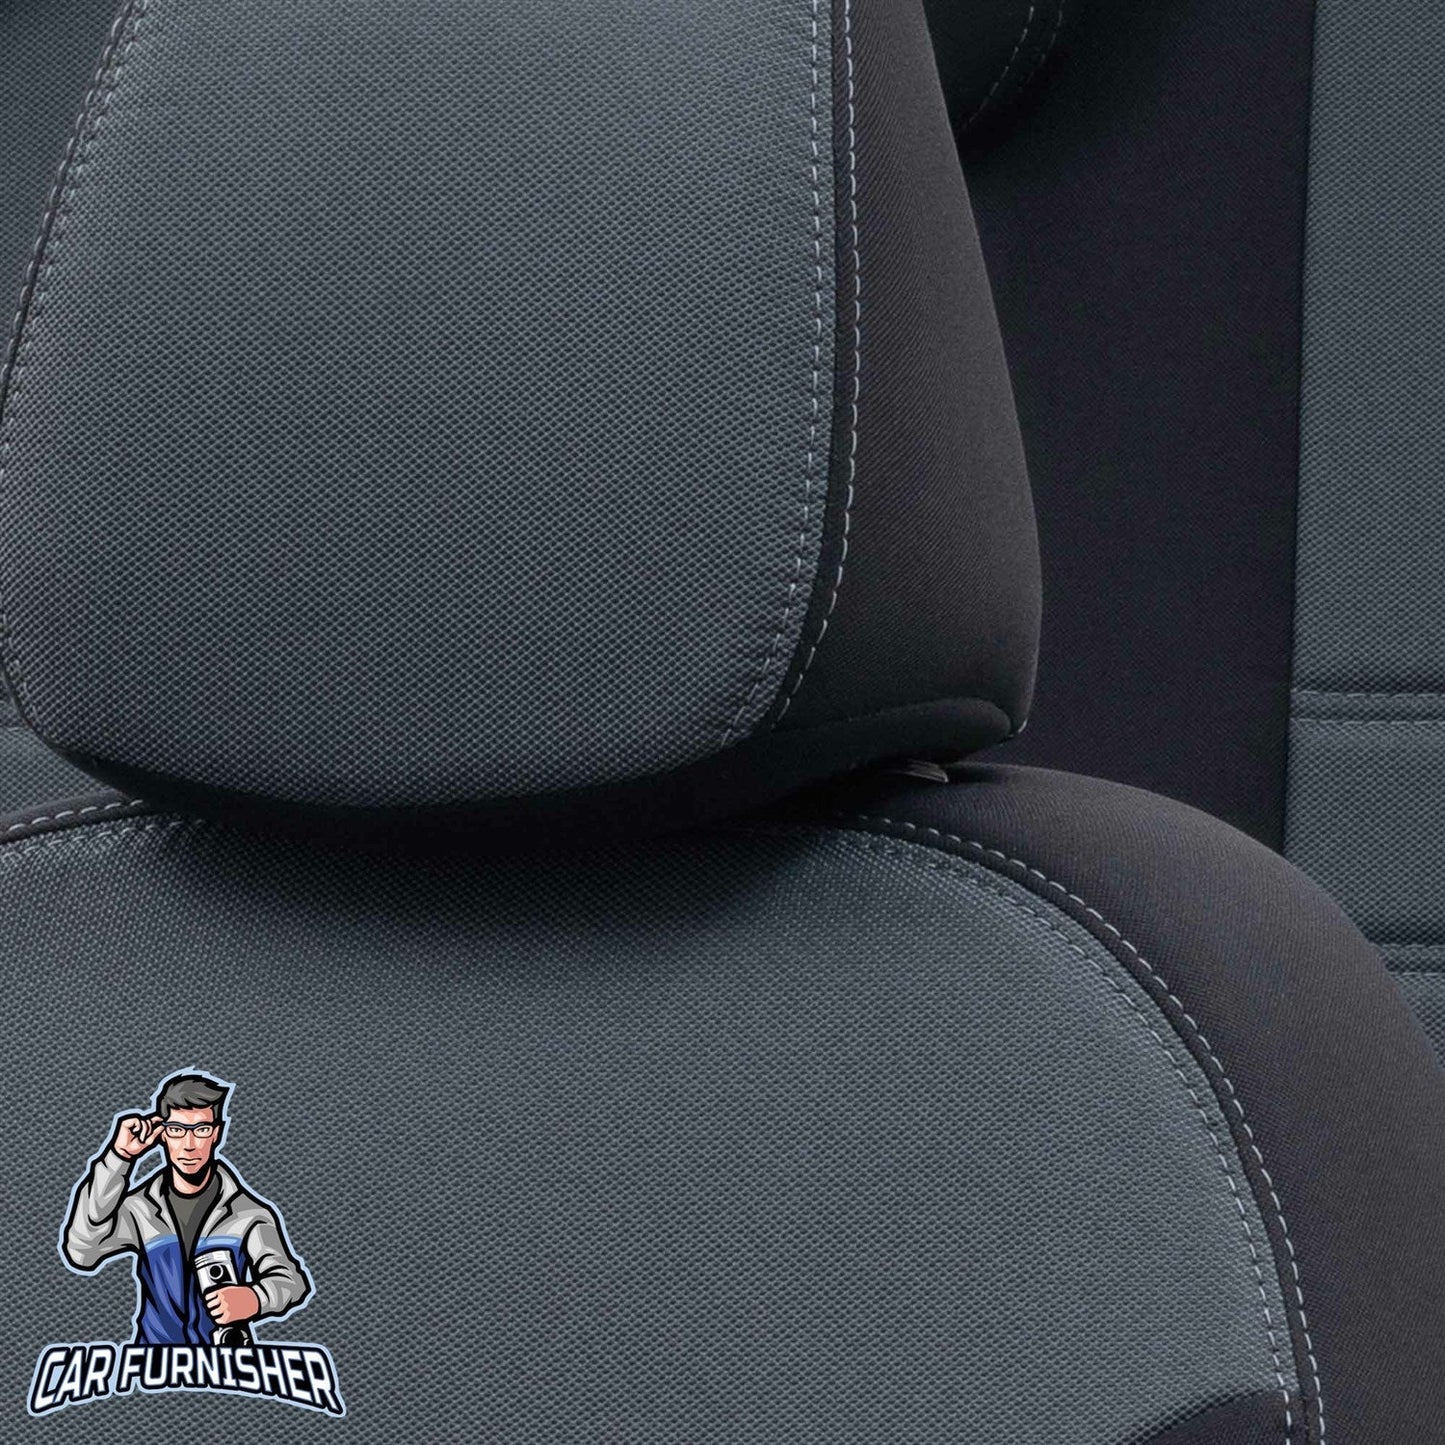 Fiat Palio Seat Covers Original Jacquard Design Smoked Black Jacquard Fabric